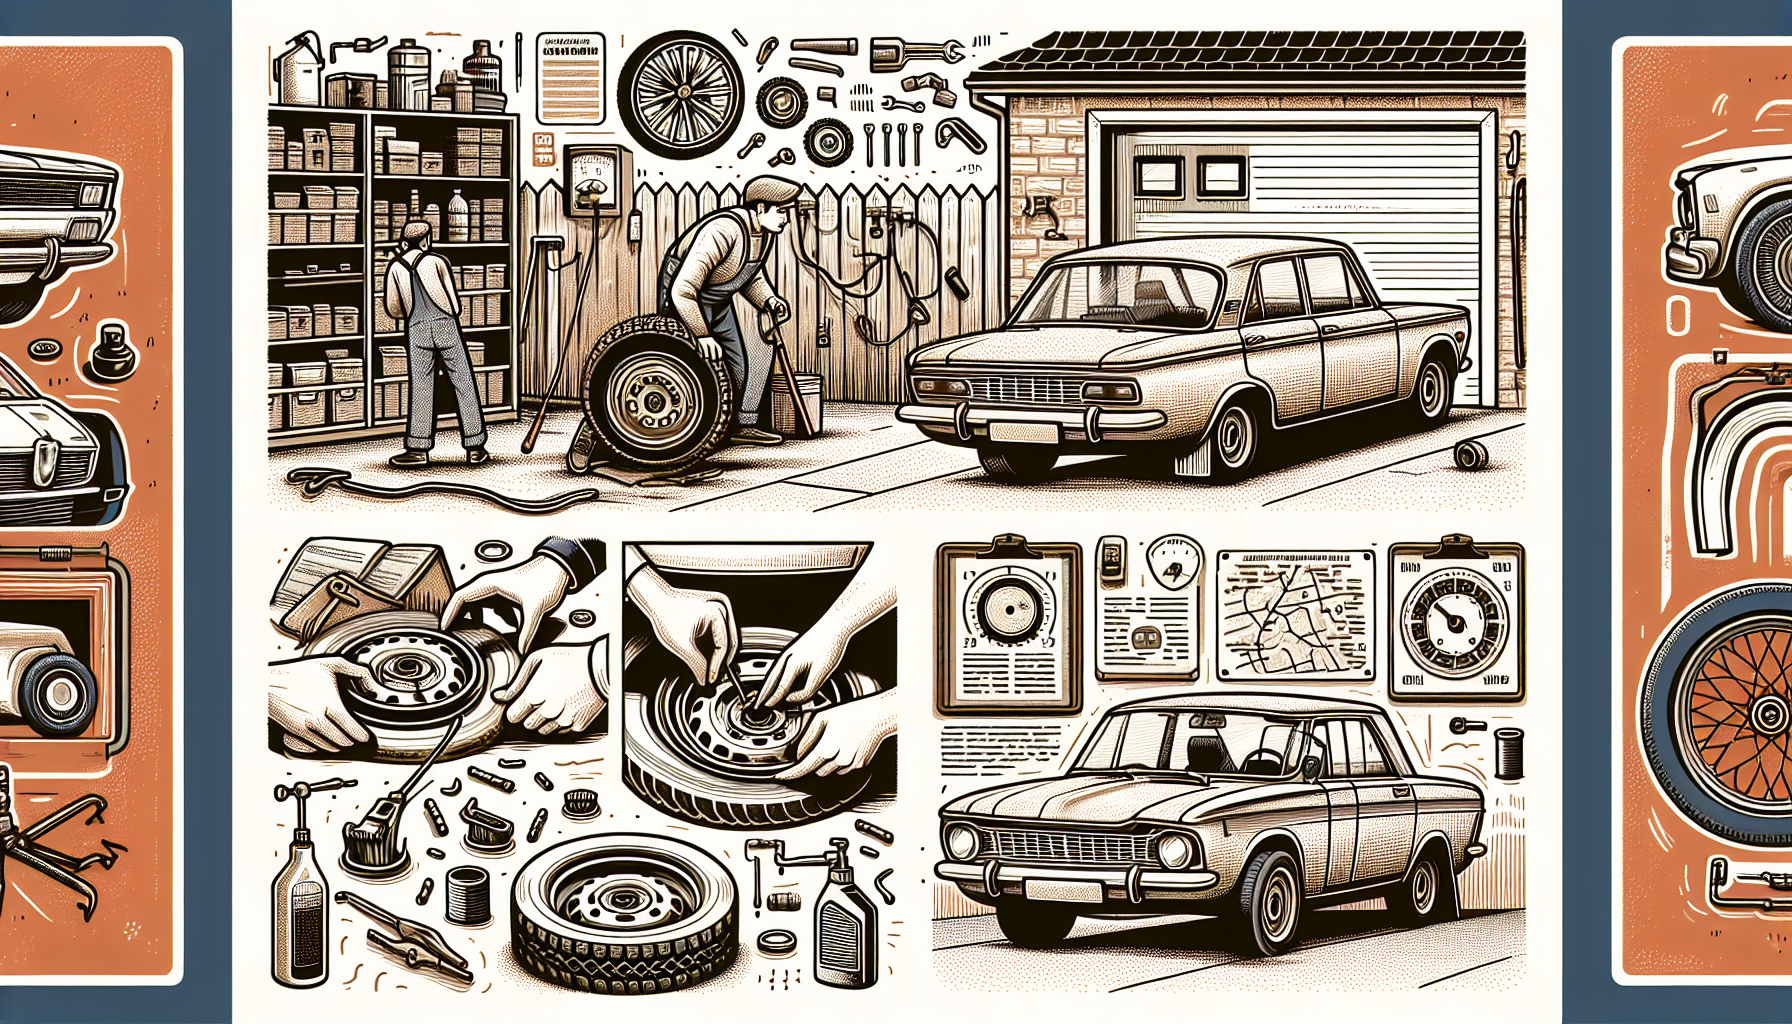 Illustration of DIY car repairs at home